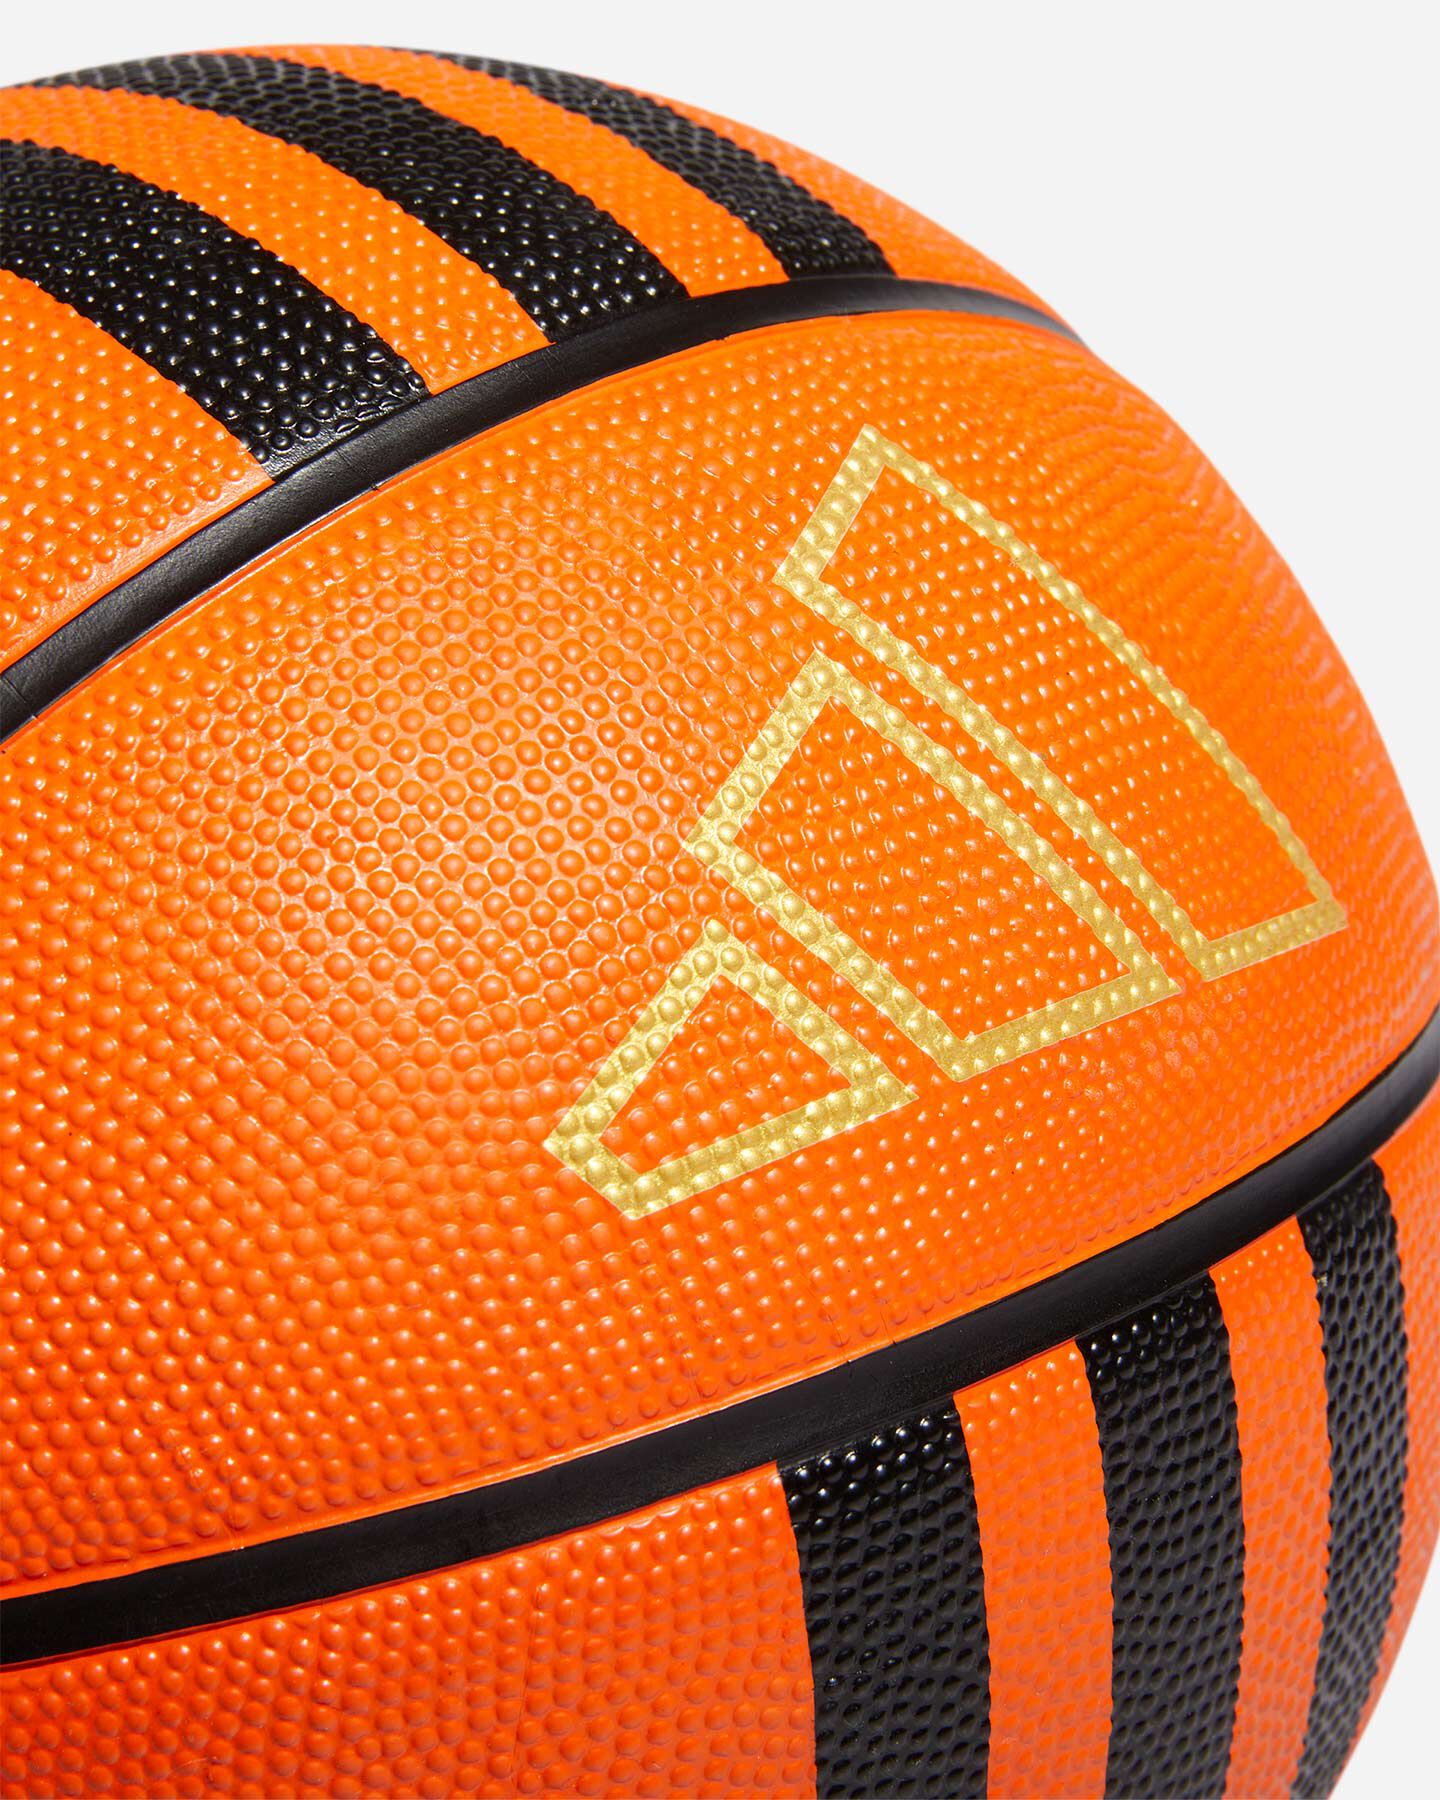  Pallone basket ADIDAS 3S RUBBER X3  S5467081|UNI|6 scatto 2